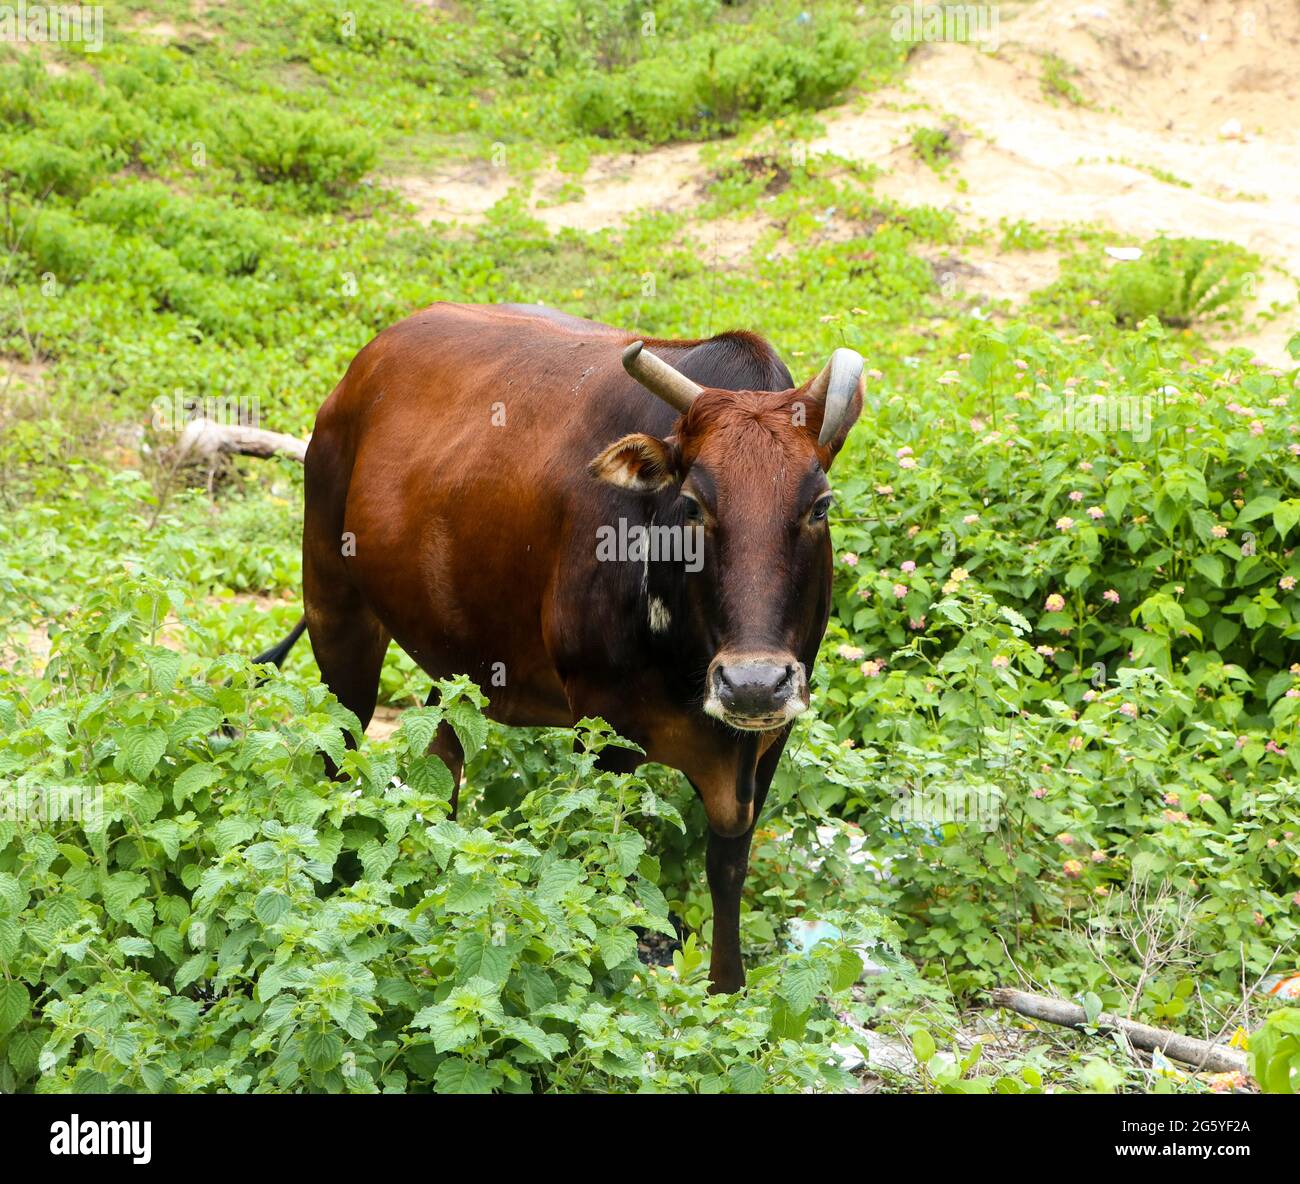 vache brun-noir foncé avec de longues cornes courbées broutant dans la prairie avec des feuilles vertes et des plantes regardant la caméra Banque D'Images